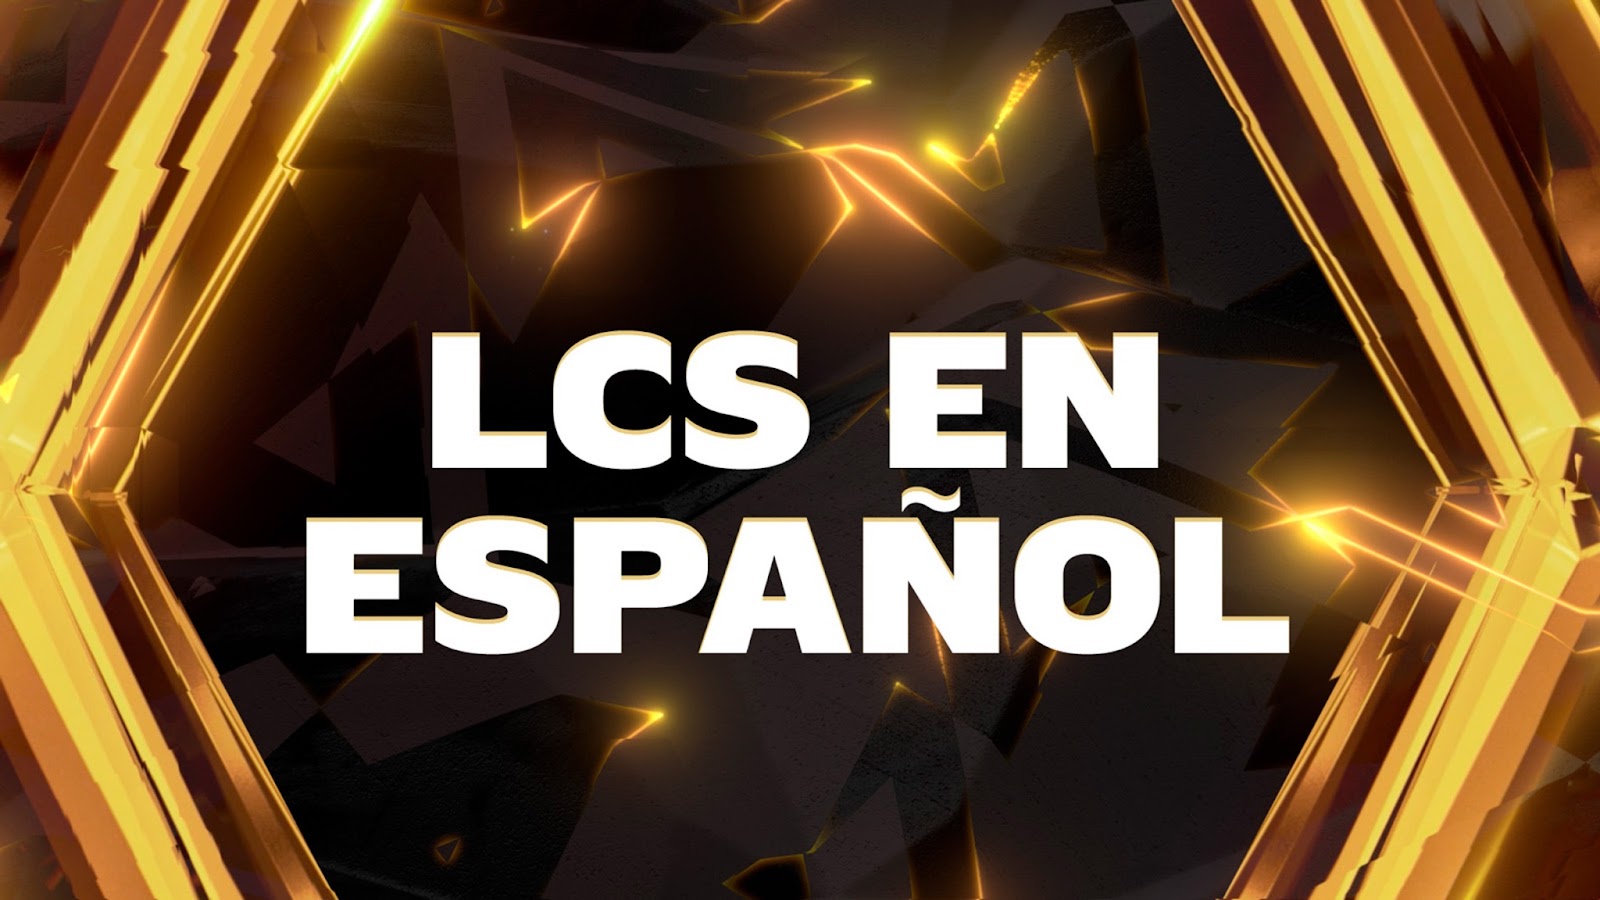 Foto de League of Legends: Desde el 23 de marzo, vive la LCS en español